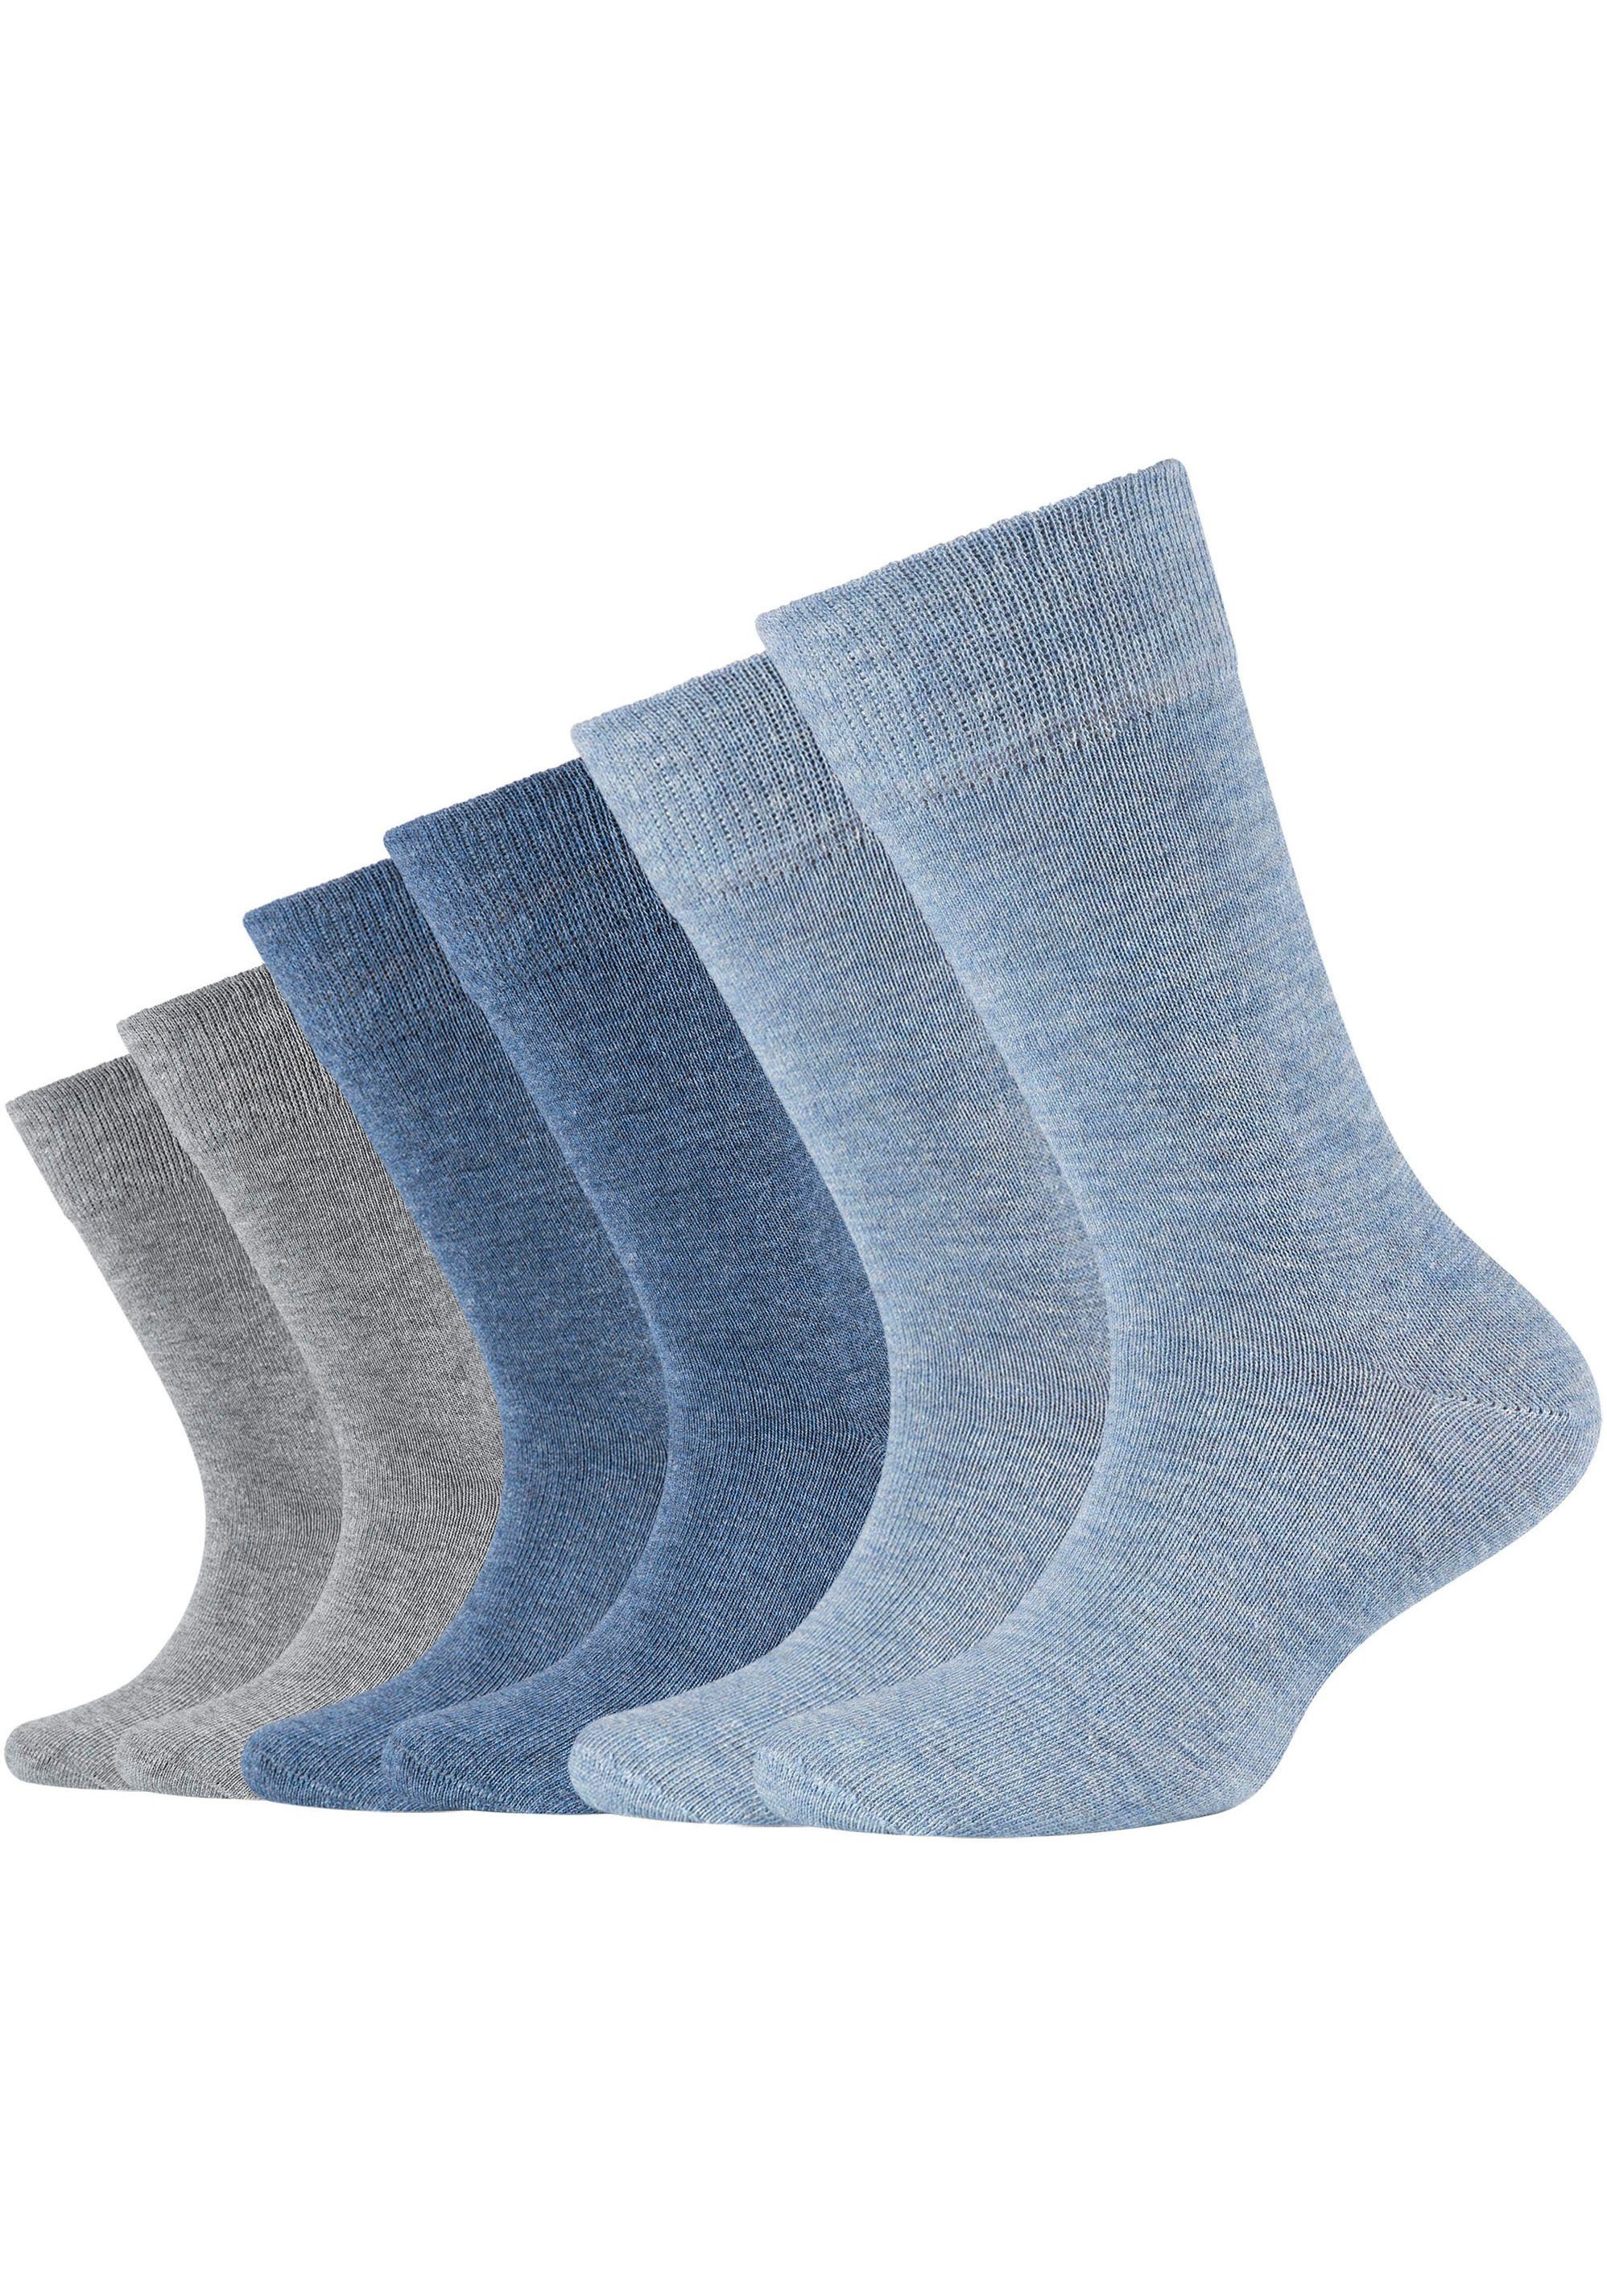 Camano jeans-mix gekämmter Hoher Anteil (Packung, meliert Baumwolle 6-Paar) Socken an